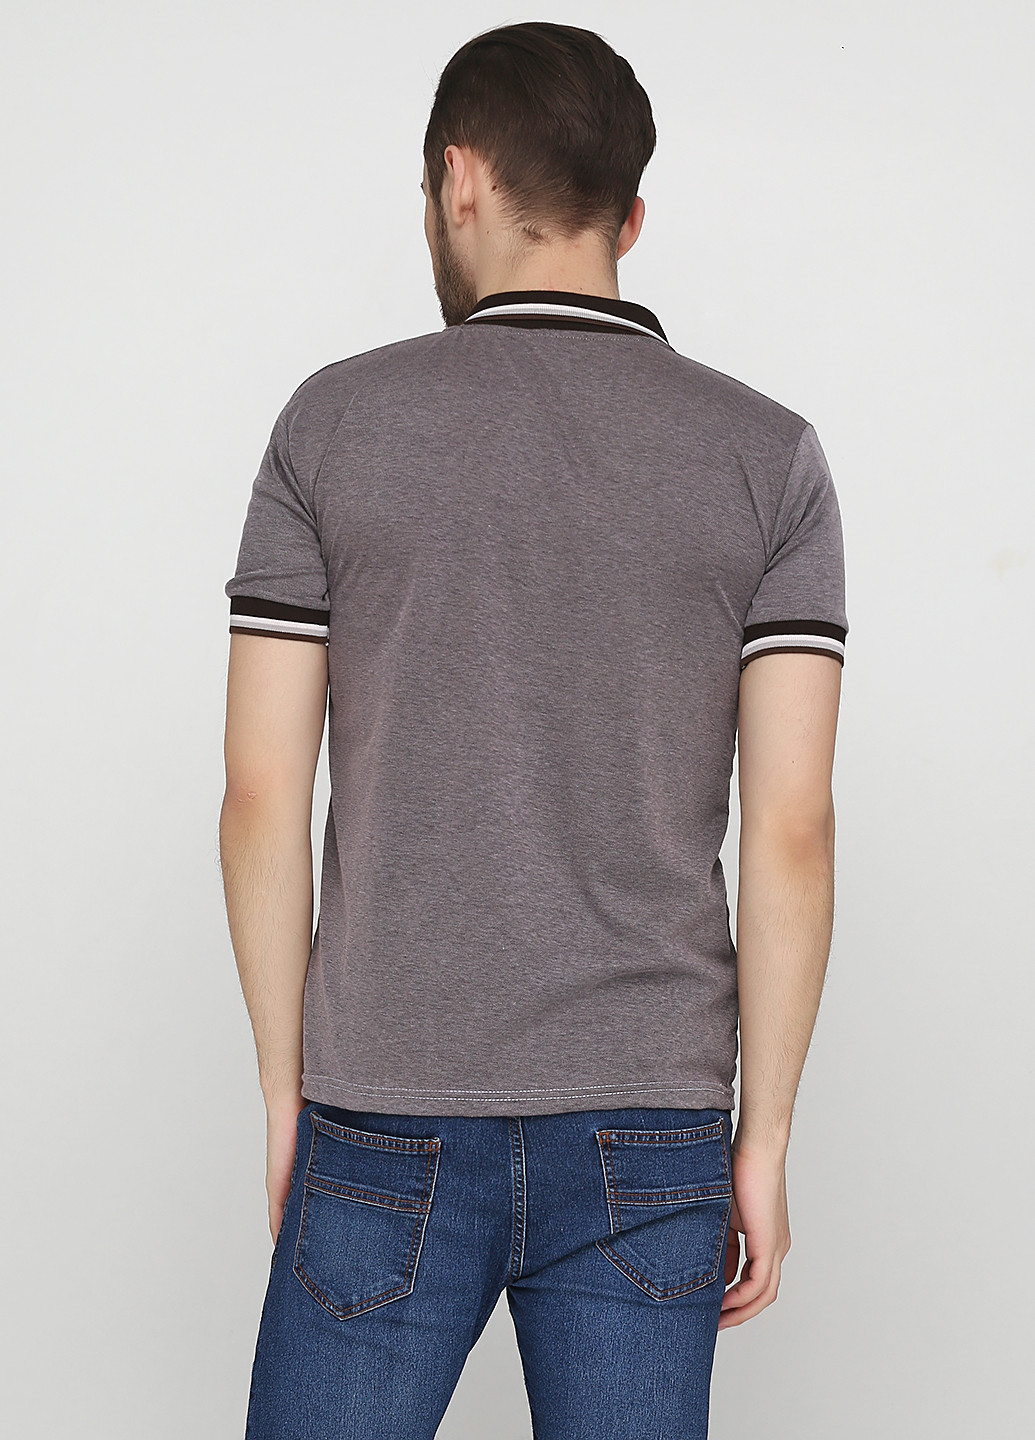 Серо-коричневая футболка-поло для мужчин Chiarotex меланжевая